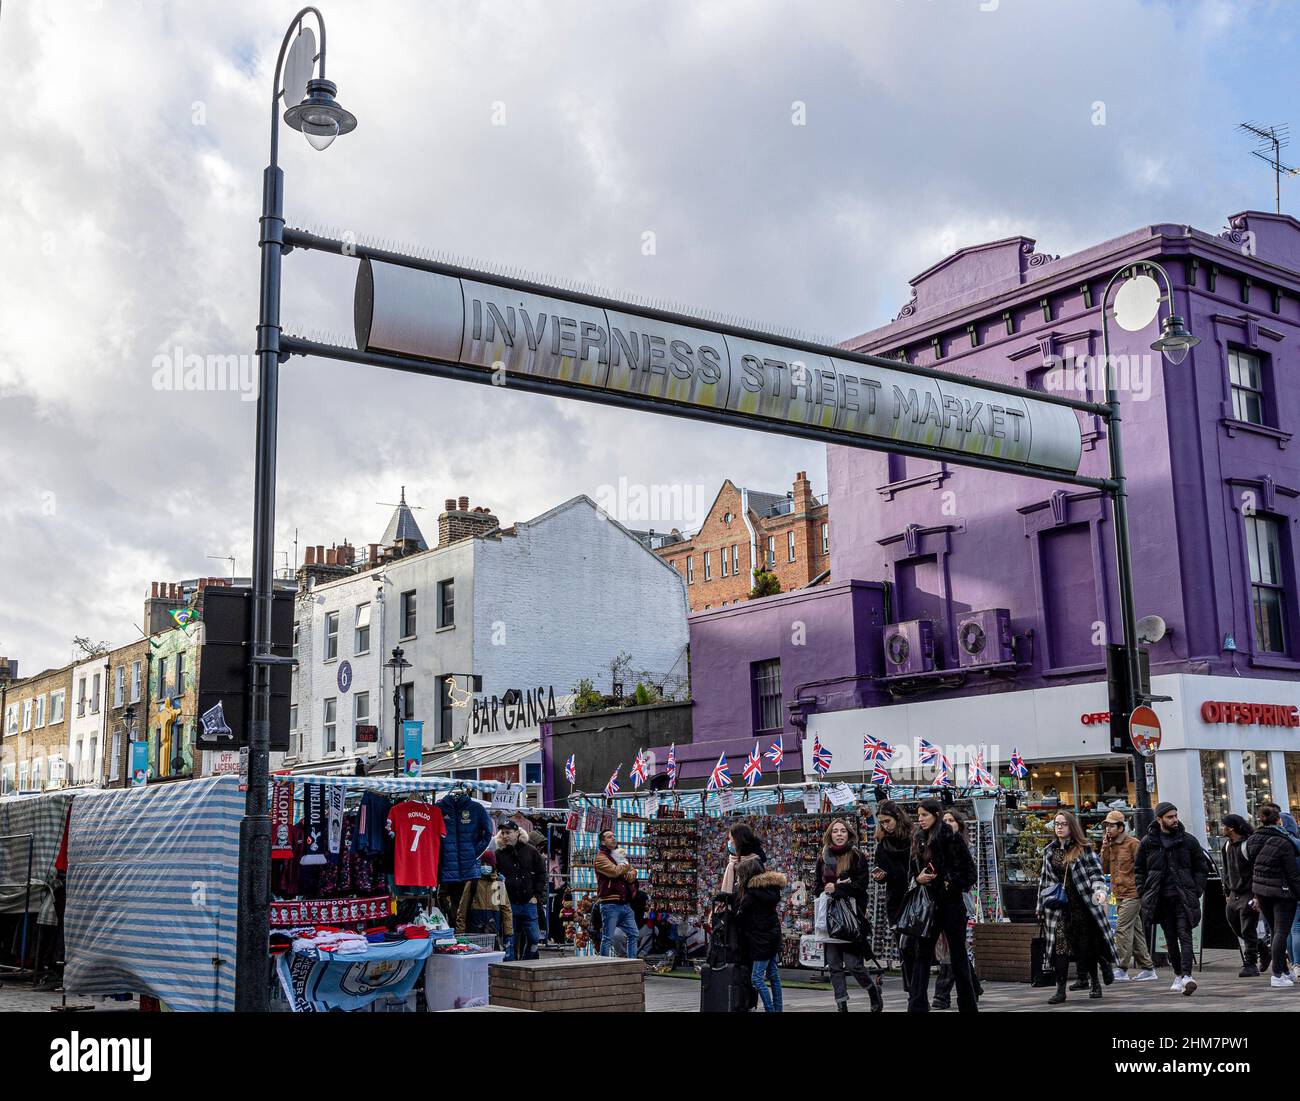 Inverness Street Market, Camden Town, Londra, Inghilterra, Regno Unito Foto Stock